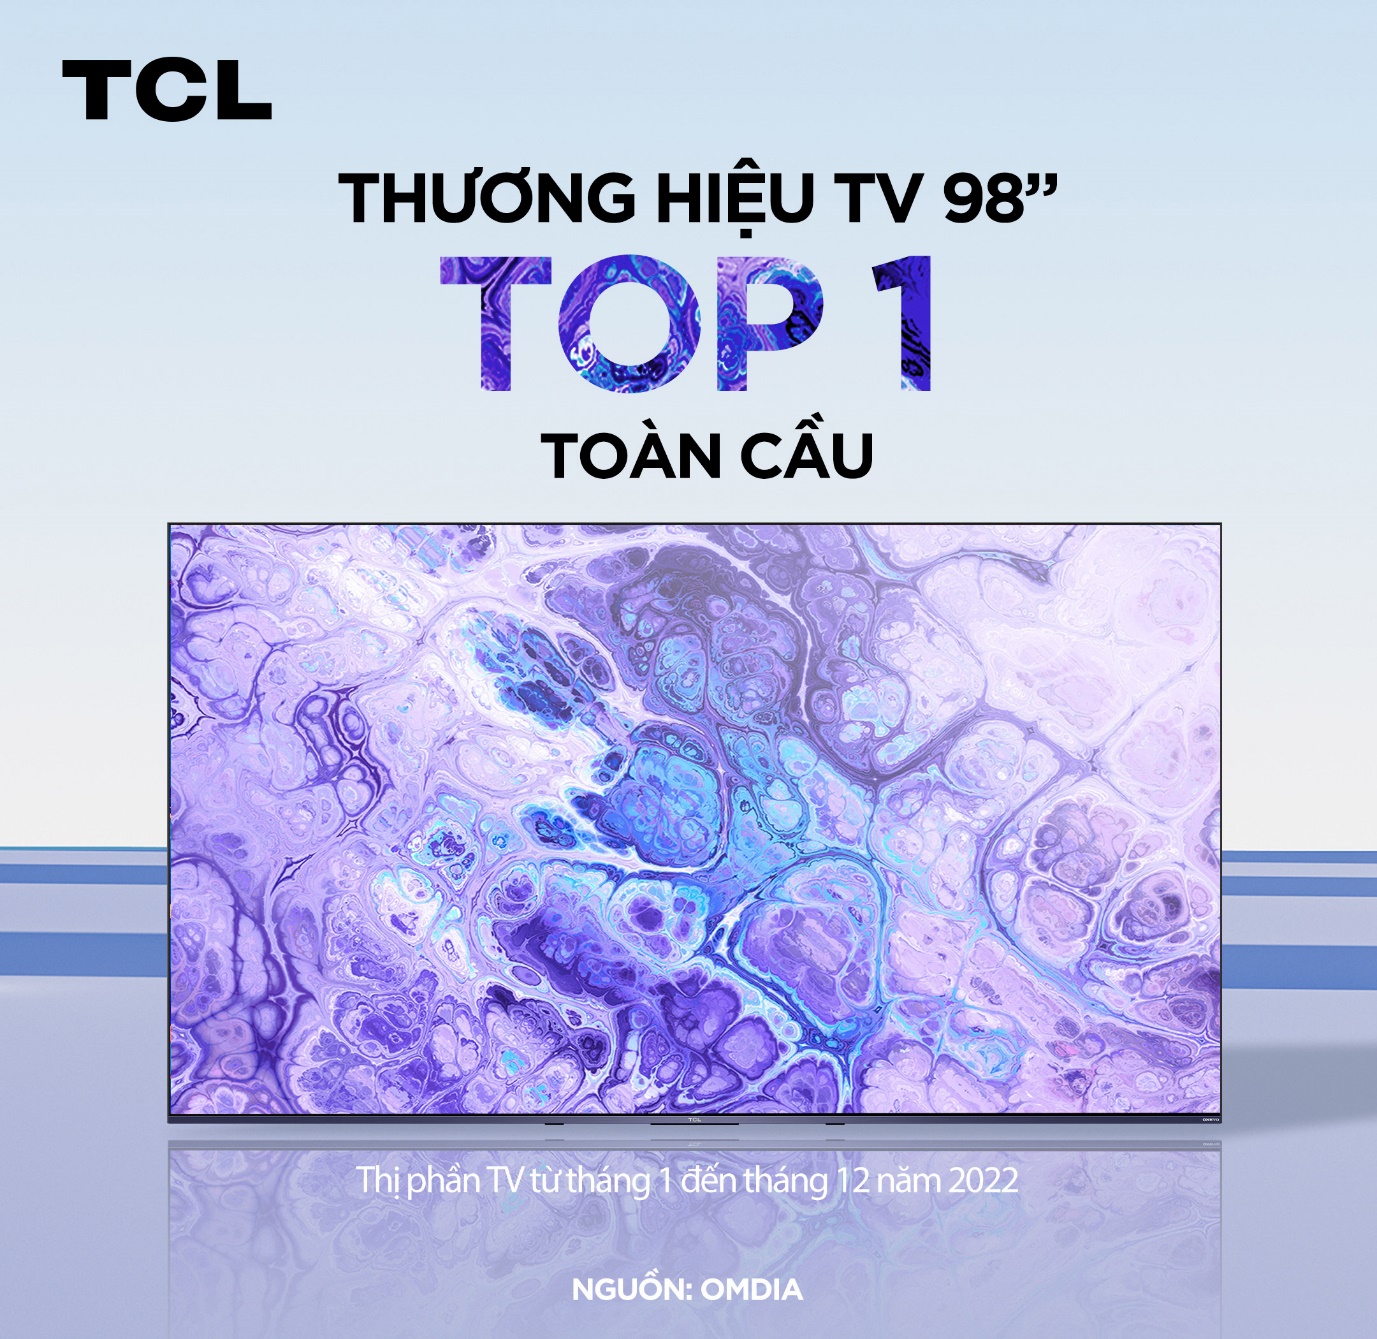 TCL xếp hạng Top 2 thương hiệu TV toàn cầu và đứng đầu thị phần TV 98 inch theo OMDIA - Ảnh 2.